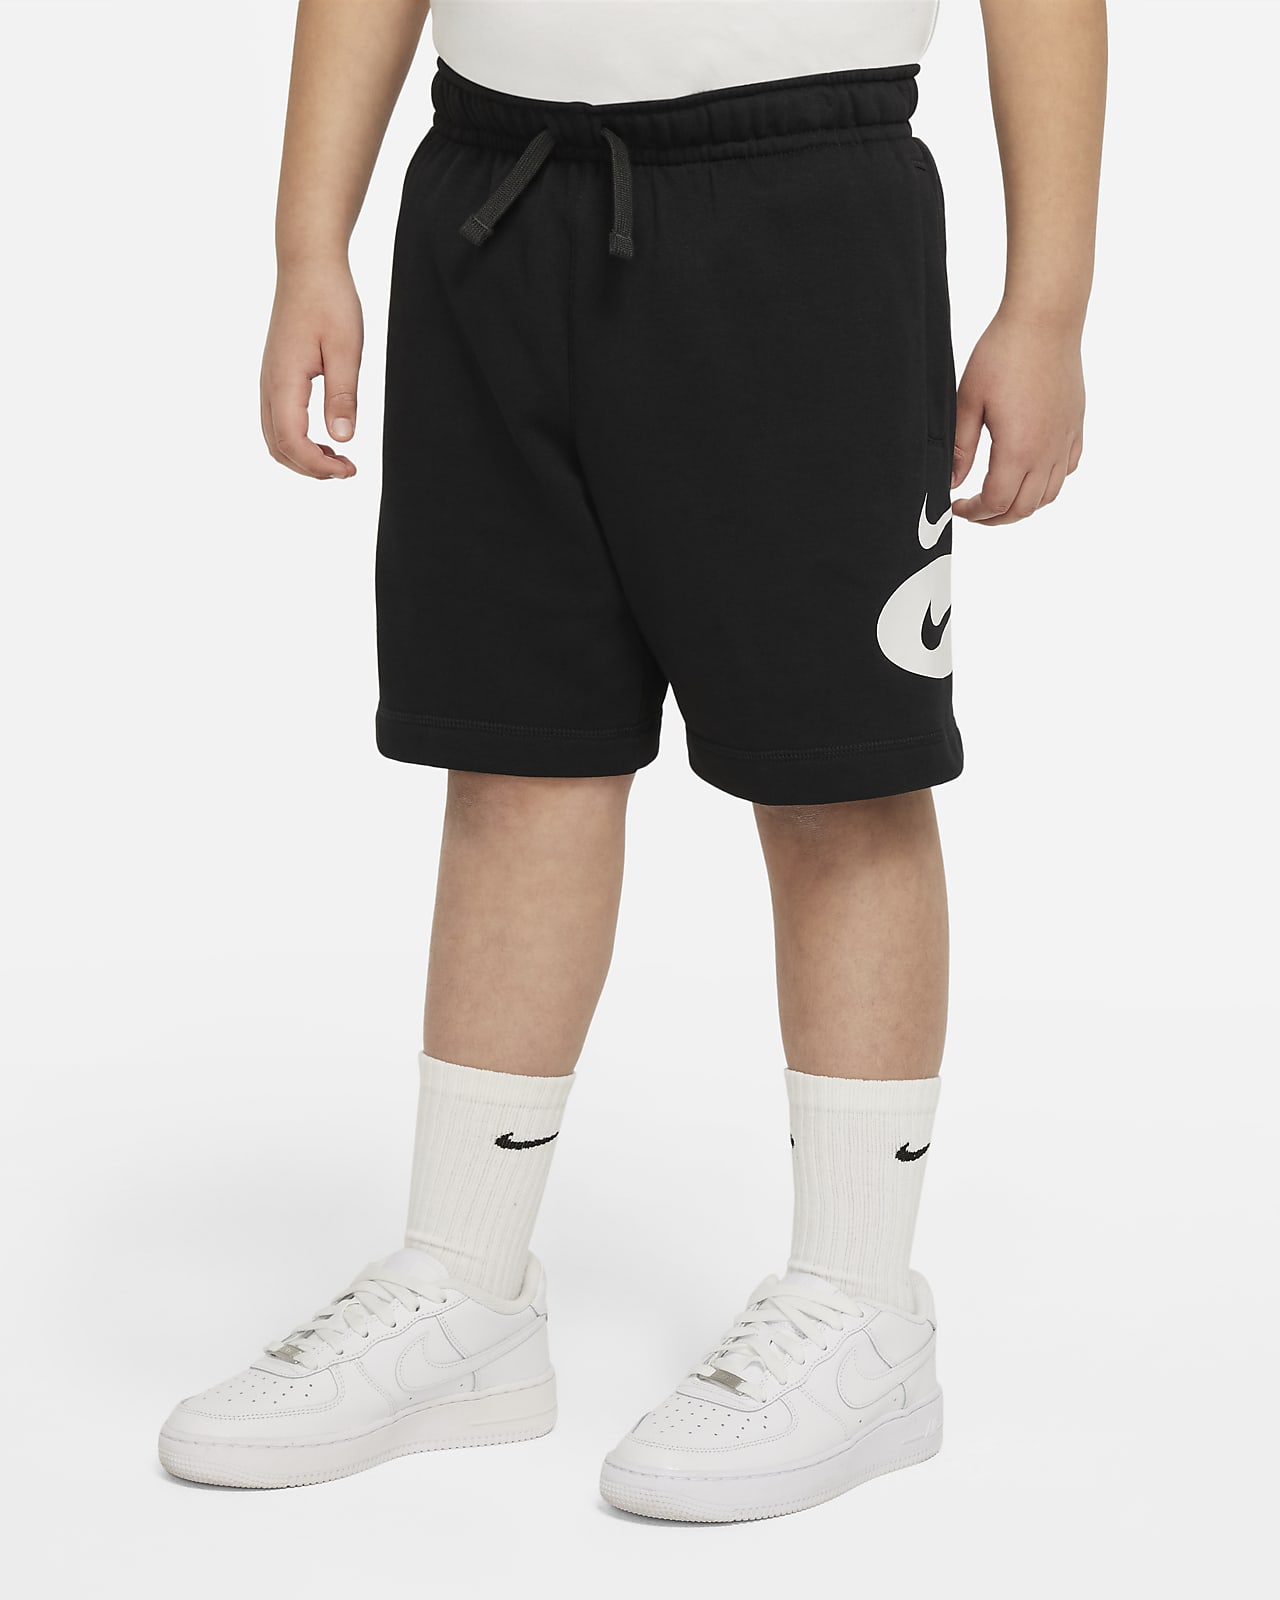 Nike Sportswear Older Kids' (Boys') Shorts (Extended Size)